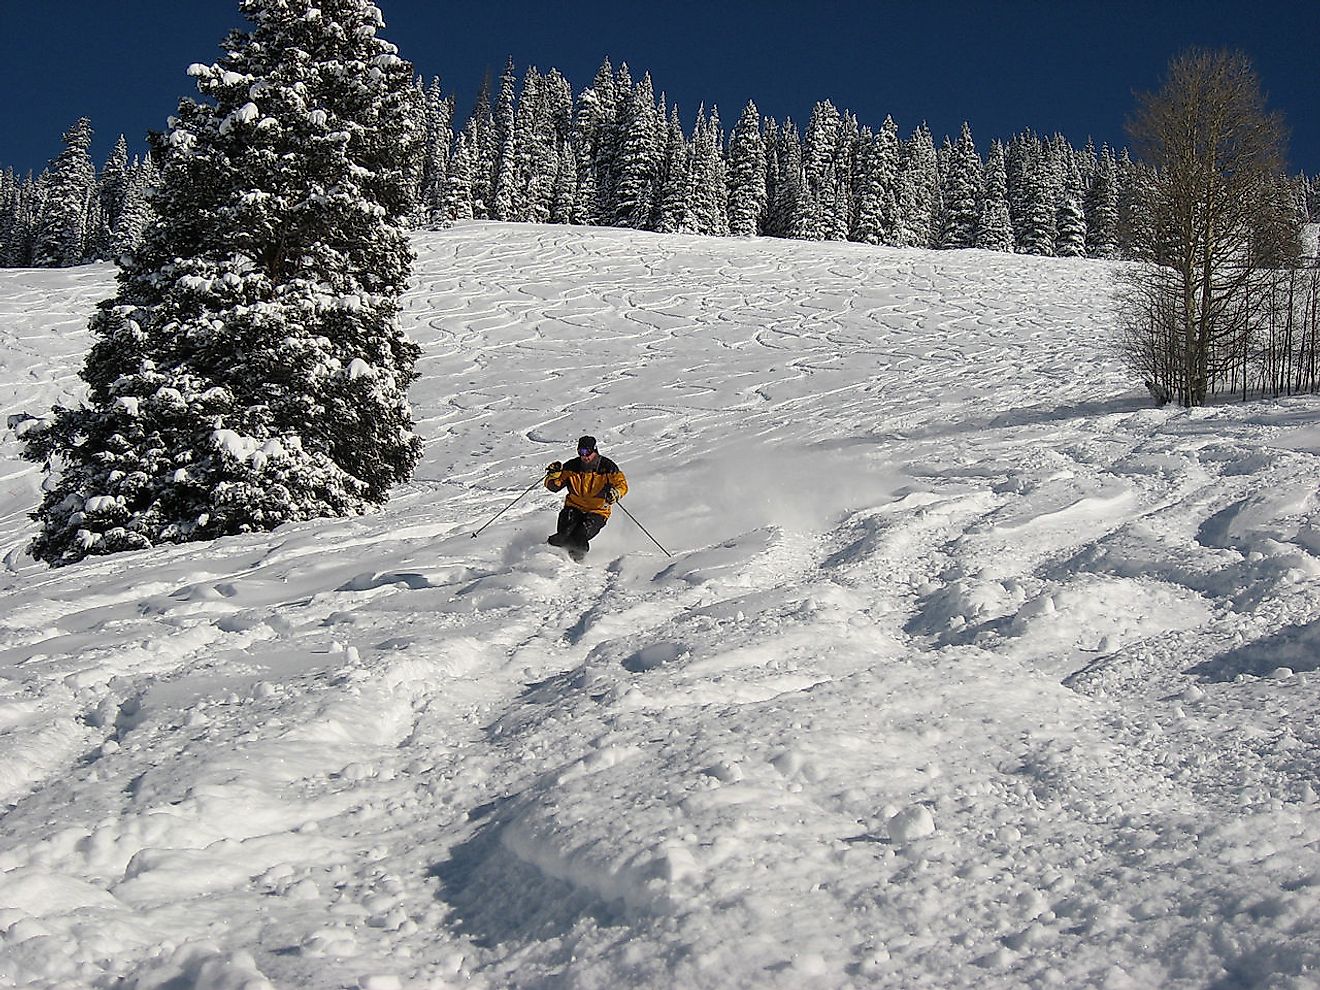 Skier on Vail Mountain, Colorado USA. Image credit: Flickr user: Brendan Gray London, UK https://www.flickr.com/photos/grayskull